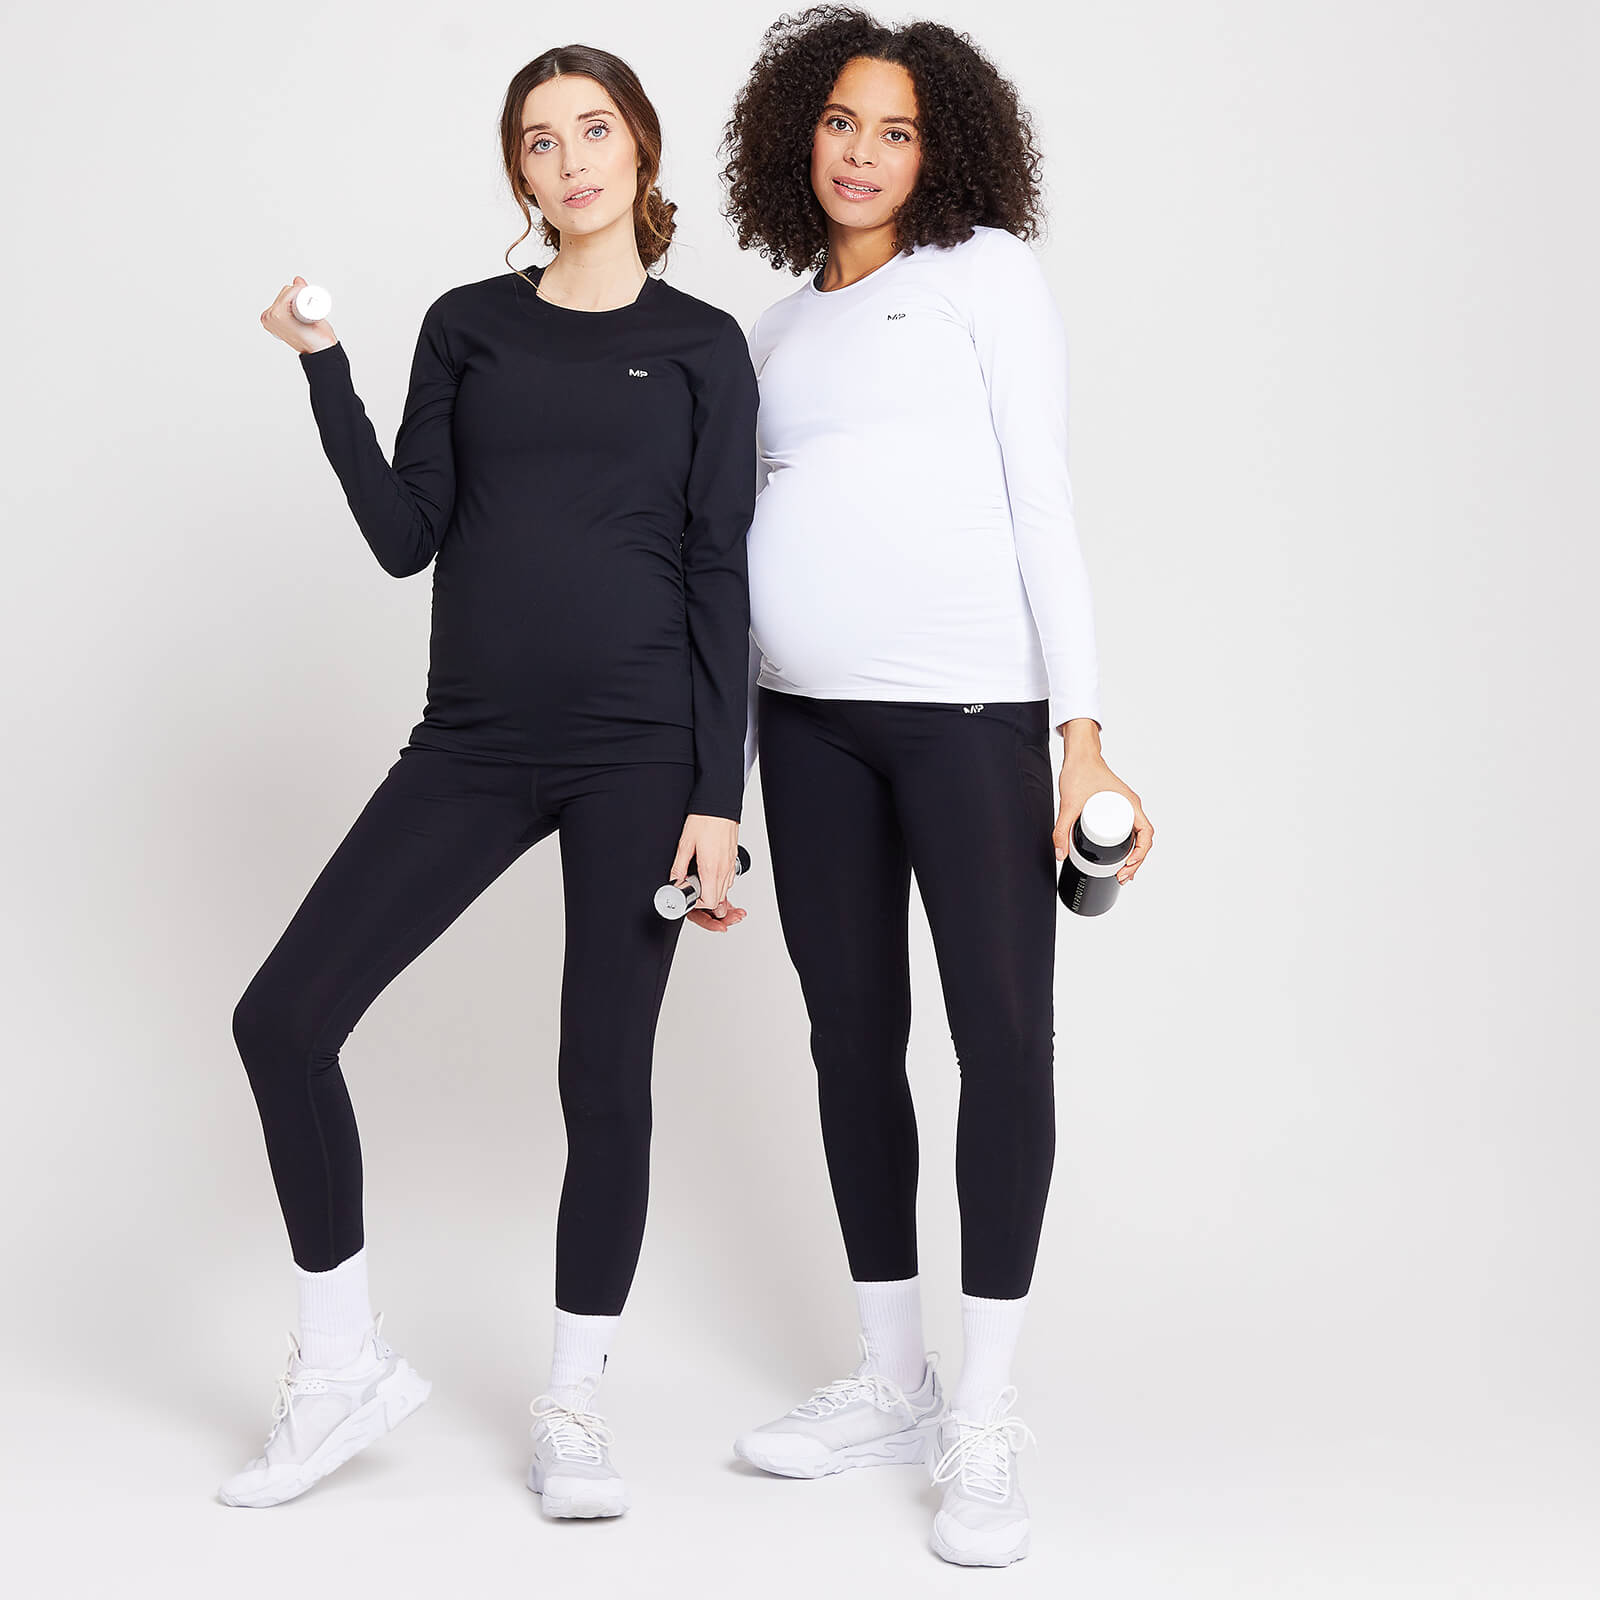 Duo de hauts de maternité à manches longues MP Power pour femmes – Noir/Blanc - M